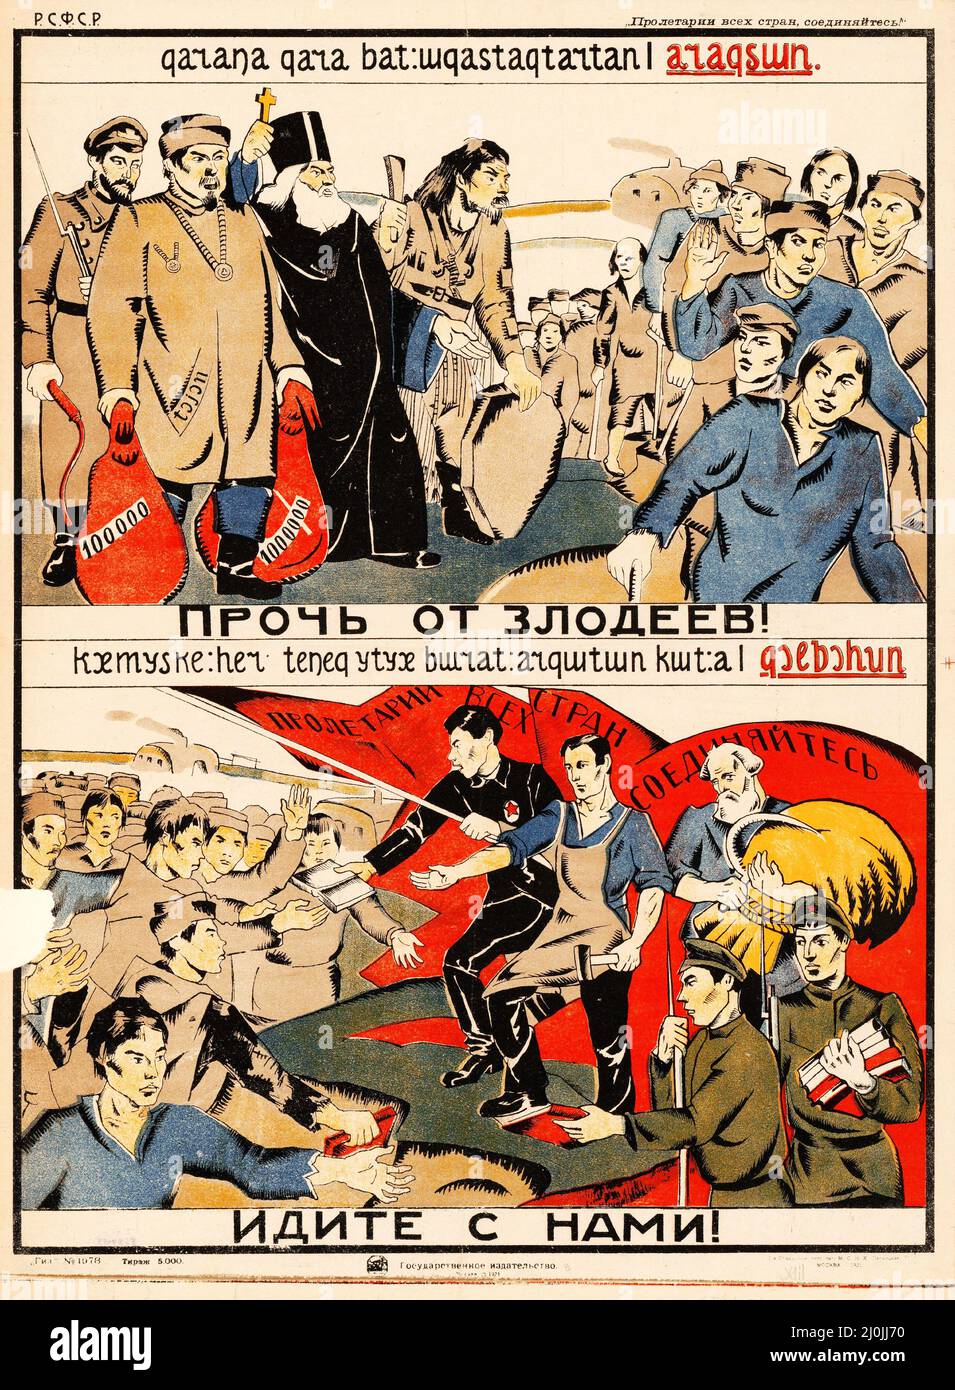 Russische Propaganda - Vintage Russisches Poster - weg von den Schurken! Kommen Sie mit uns. Moskau: Staatsverlag, 1921. Stockfoto